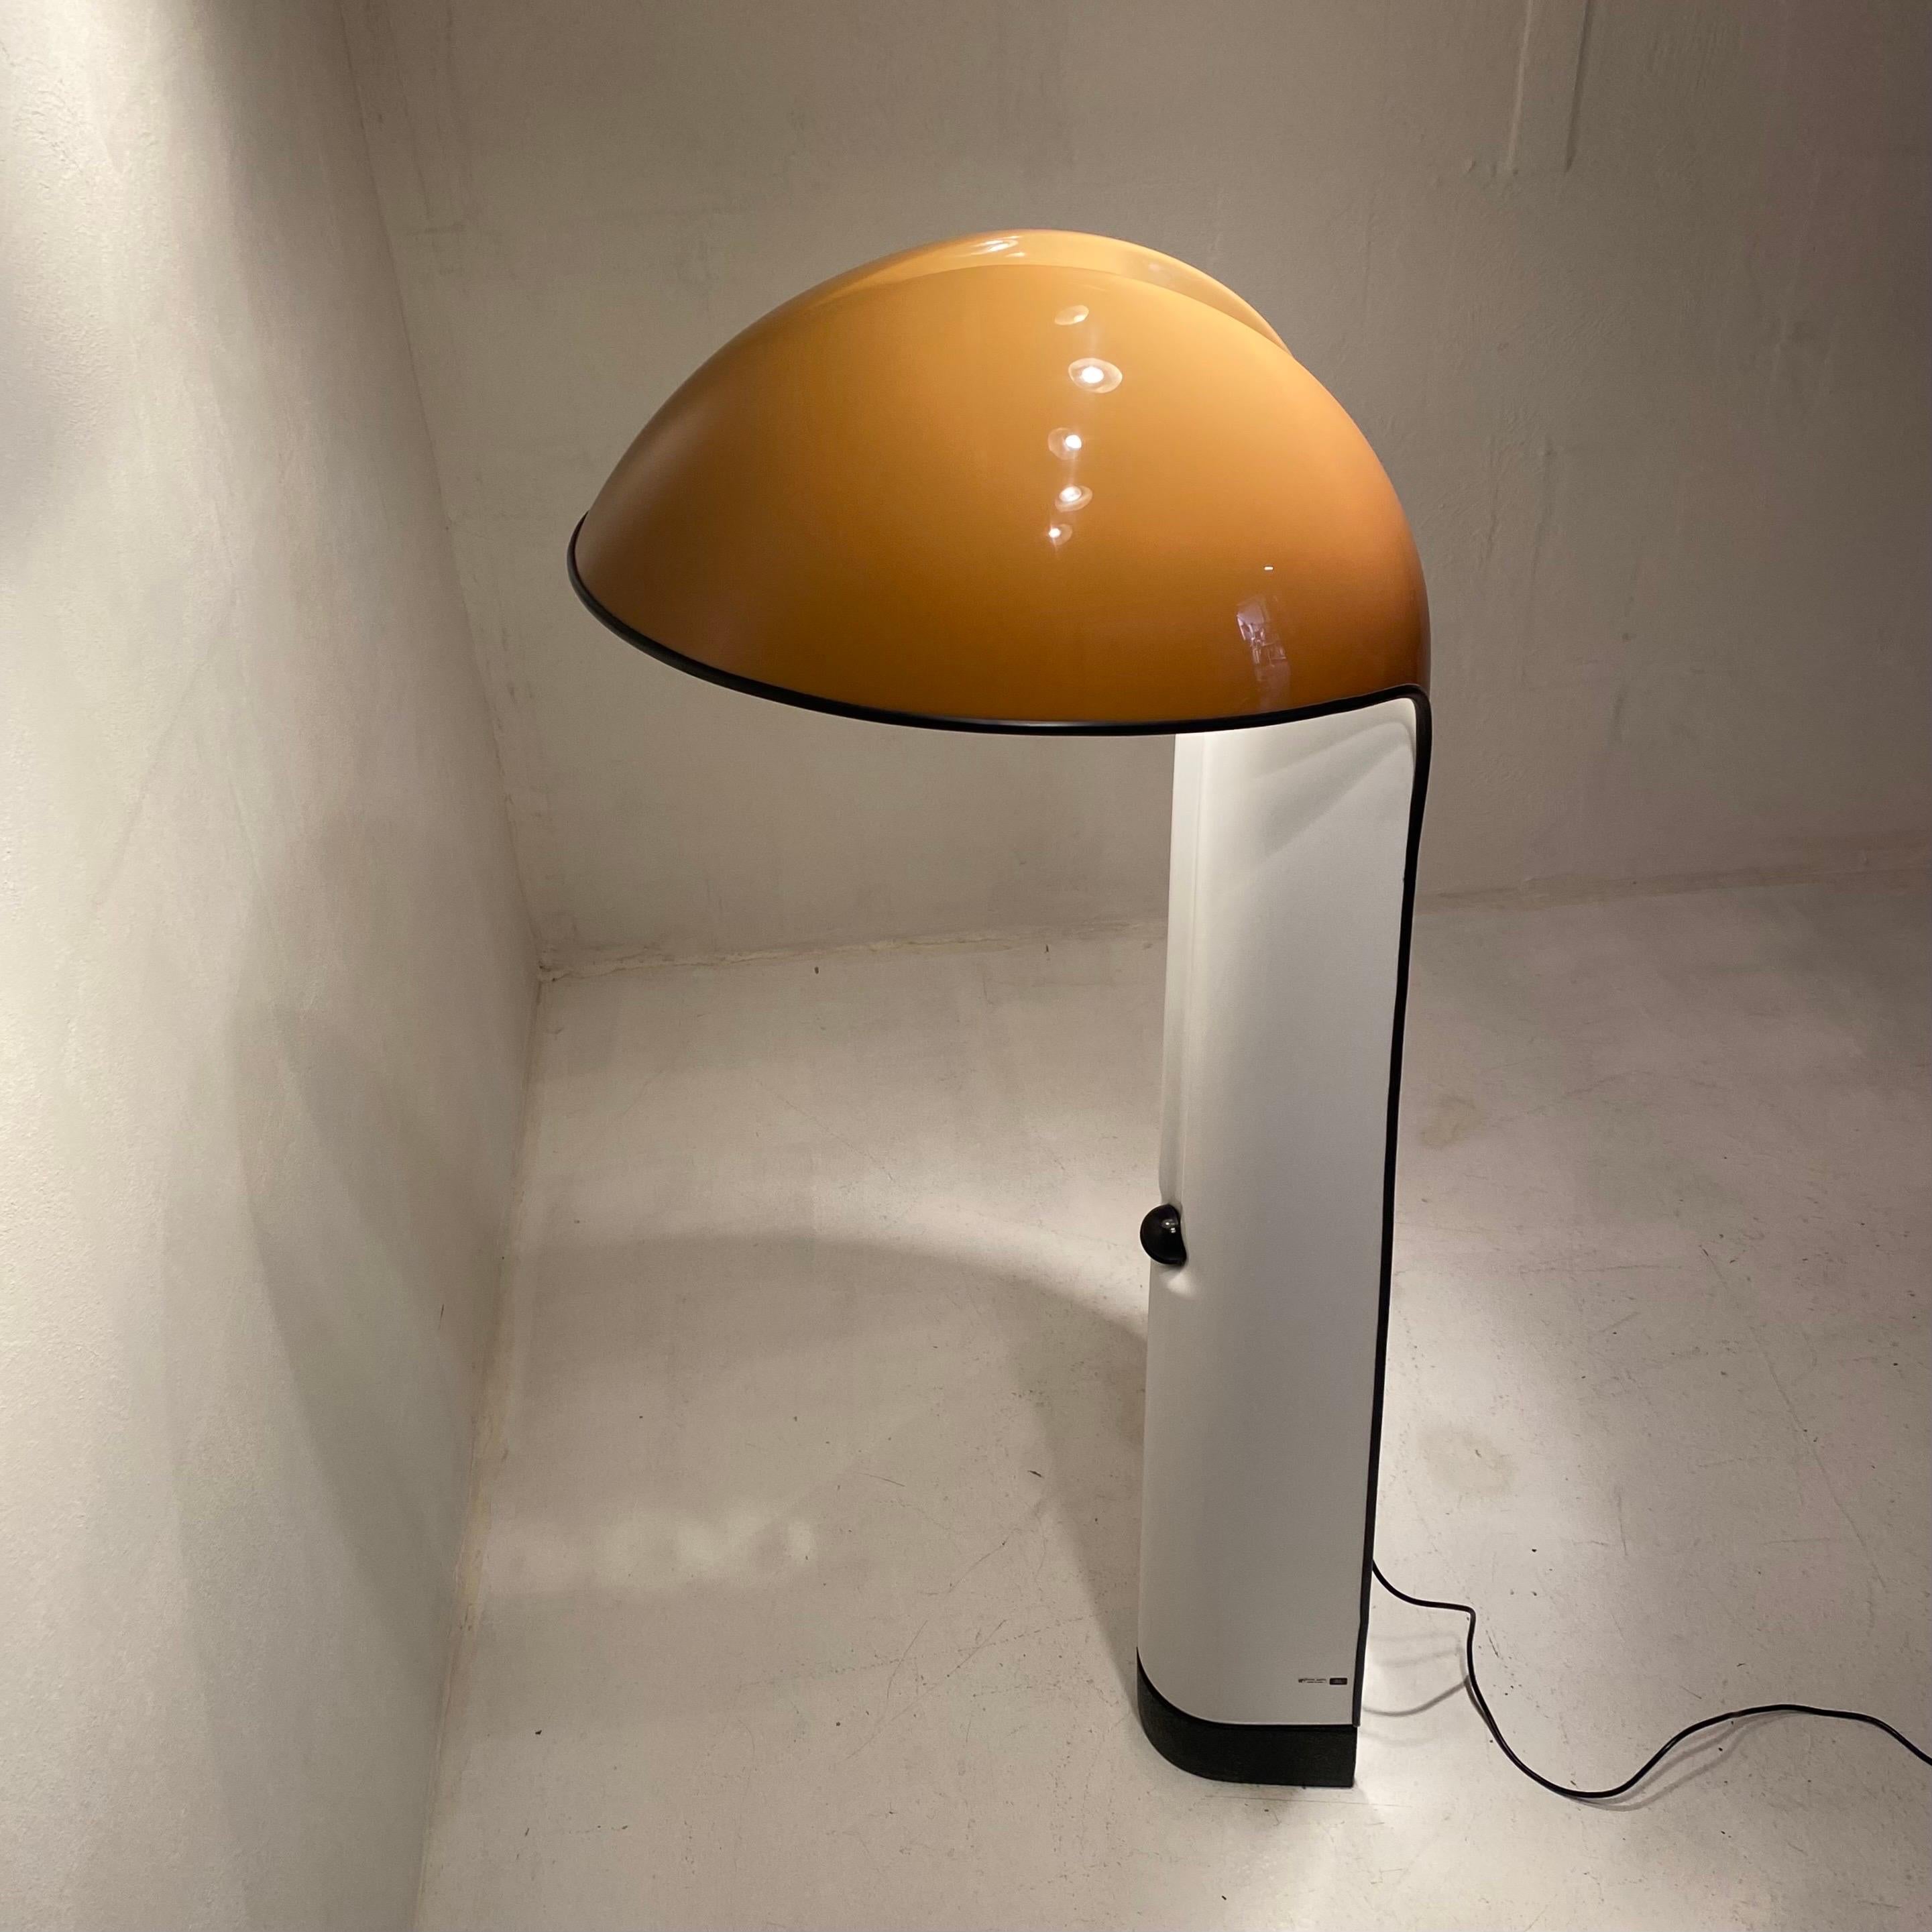 Rare et iconique lampadaire italien, Alba, méticuleusement conçu par Ermanno Lampa et Sergio Brazzoli pour Guzzini dans les années 1970. 

Fabriqué en plastique couleur caramel à l'extérieur et en blanc immaculé à l'intérieur, ce chef-d'œuvre